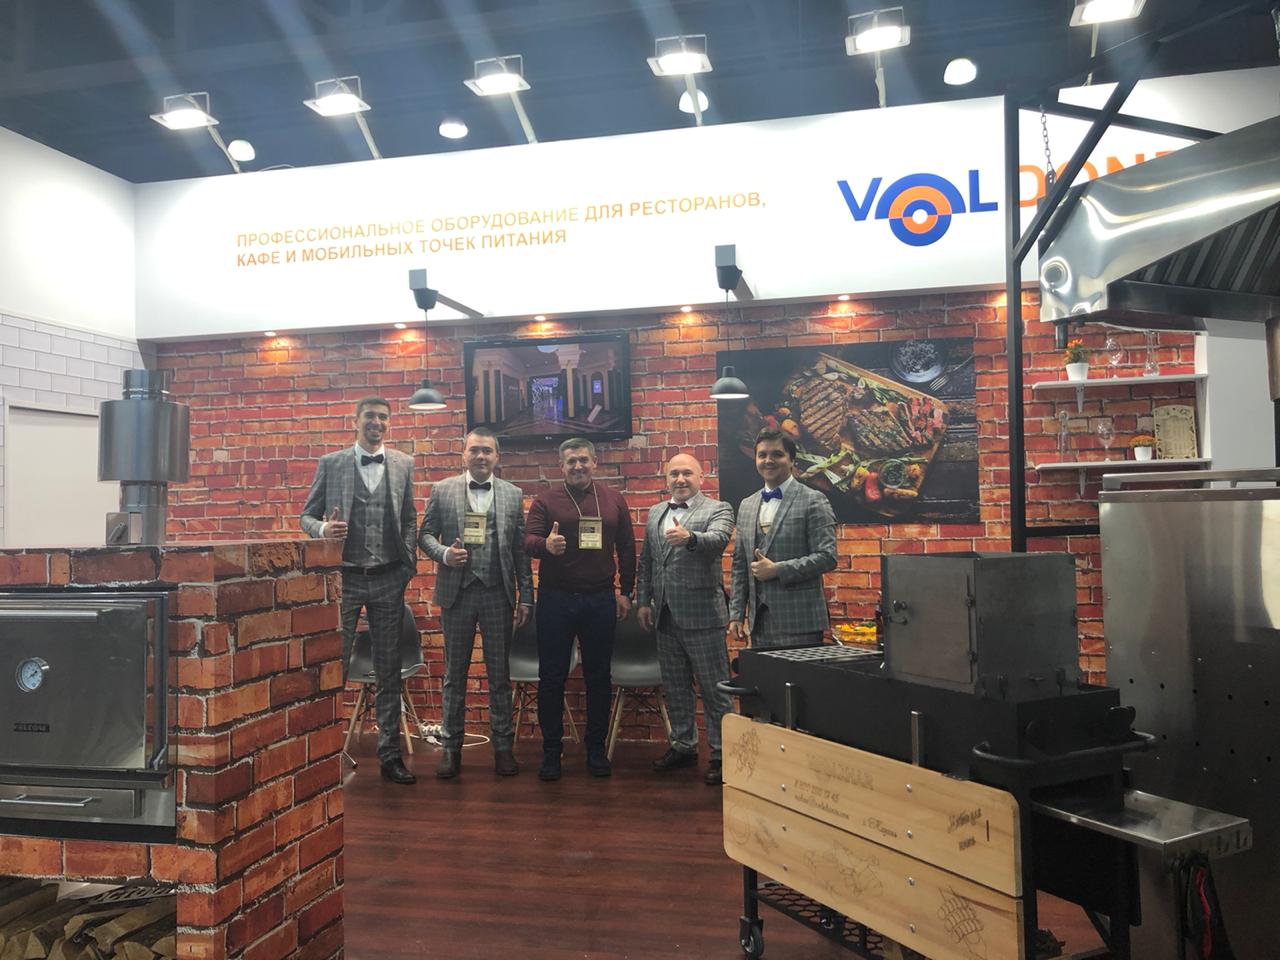 Новинки профессионального оборудования под маркой VOLDONE были представлены на PIR Expo 2019